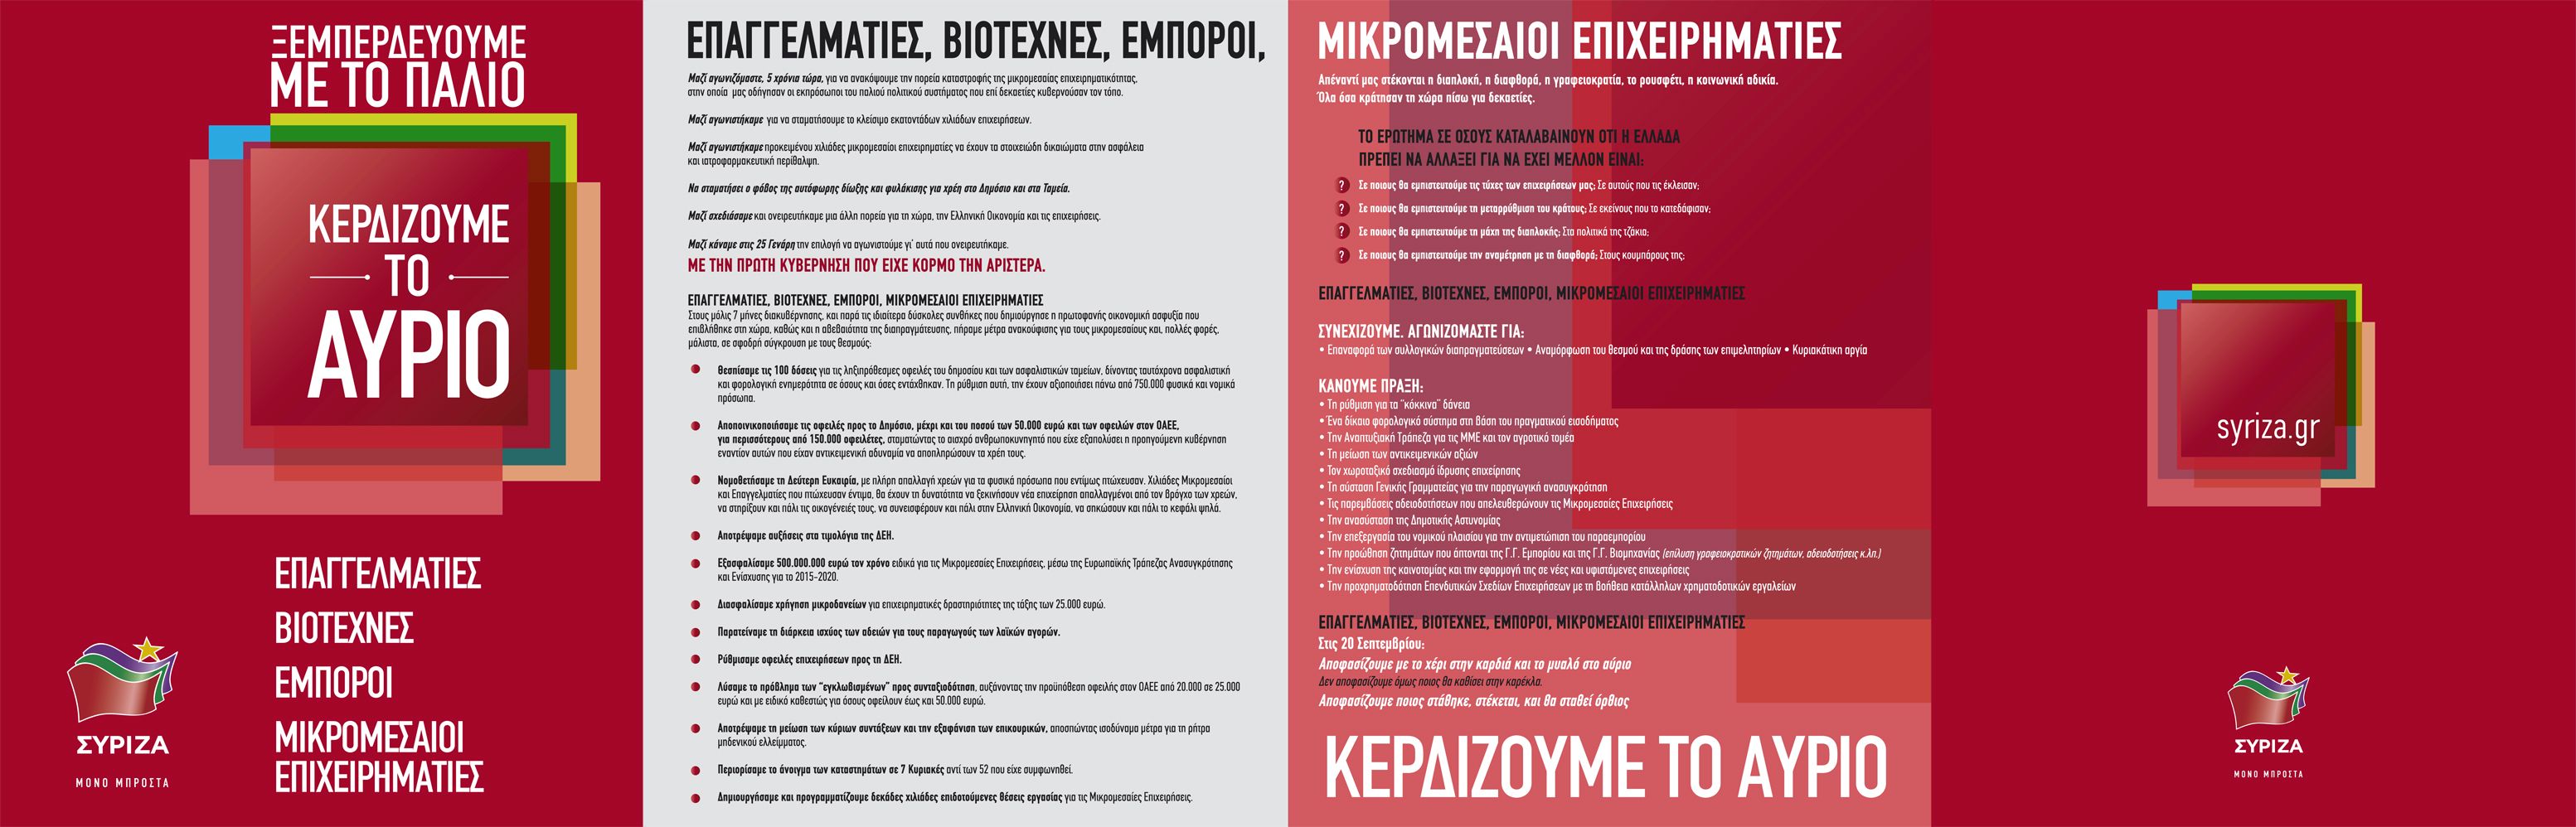 Το φυλλάδιο του ΣΥΡΙΖΑ για τις μικρομεσαίες επιχειρήσεις